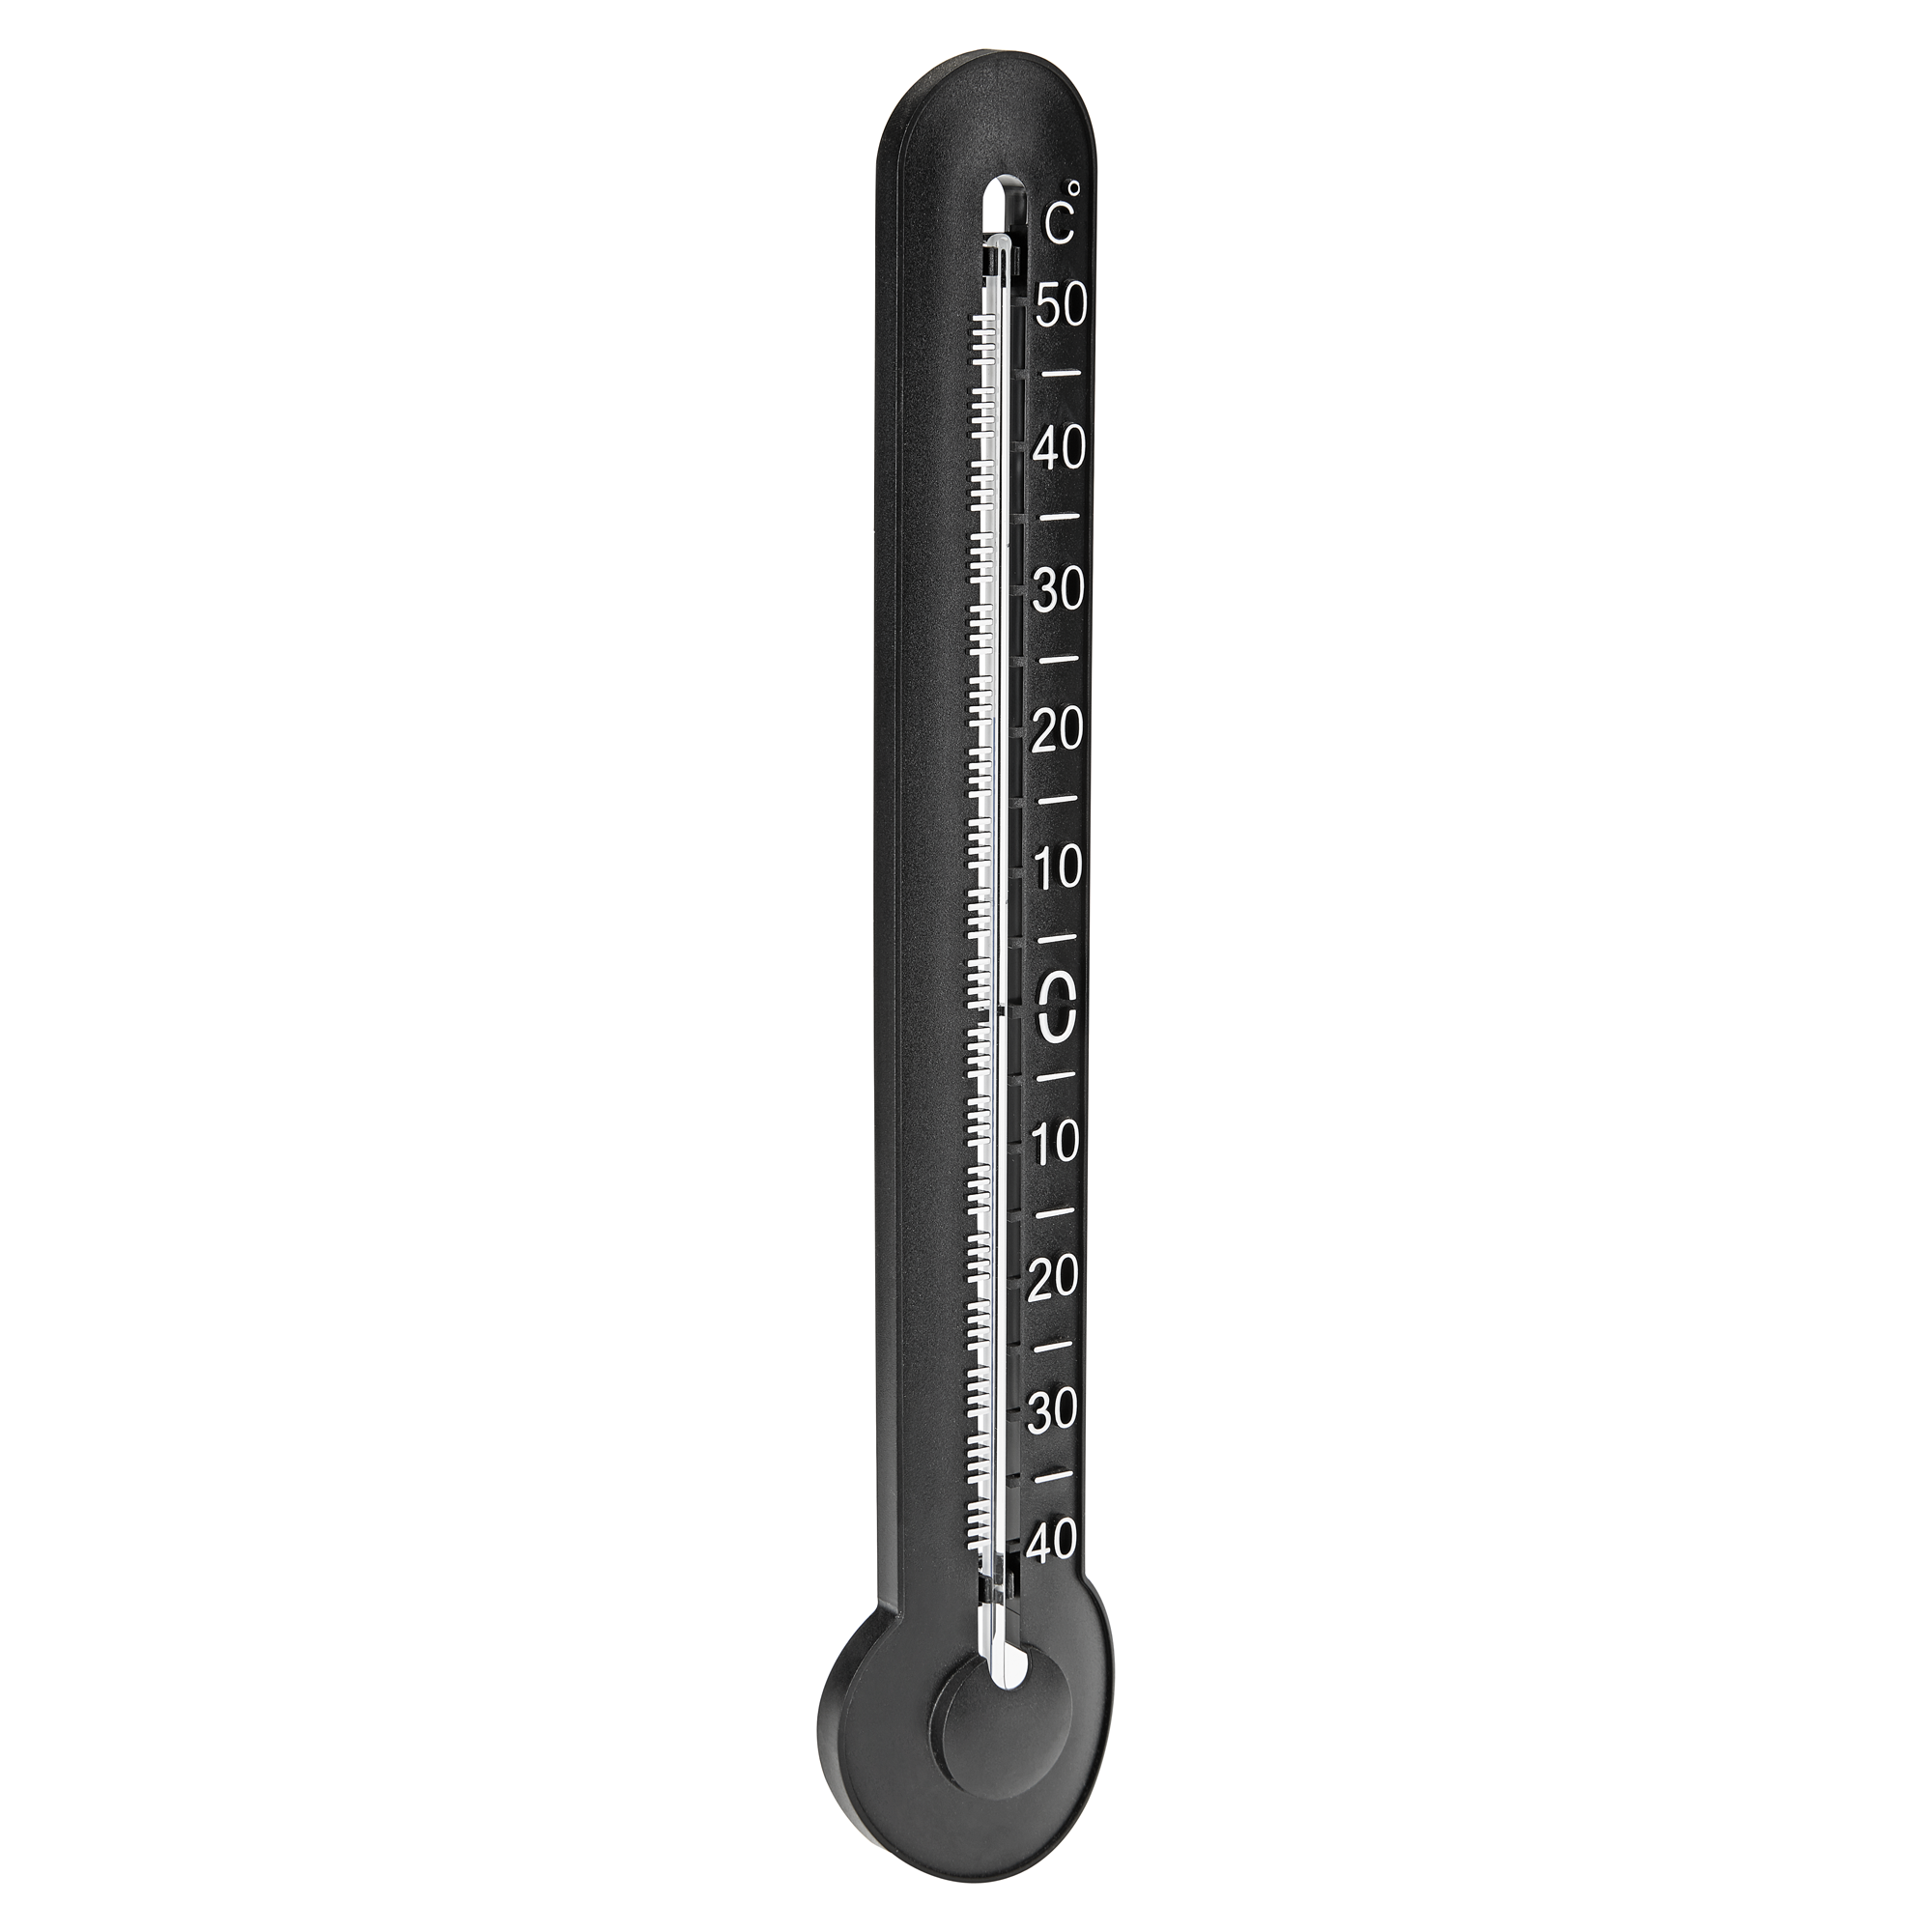 Innen- oder Außenthermometer Kunststoff schwarz 5,4 x 2,3 x 28,7 cm + product picture